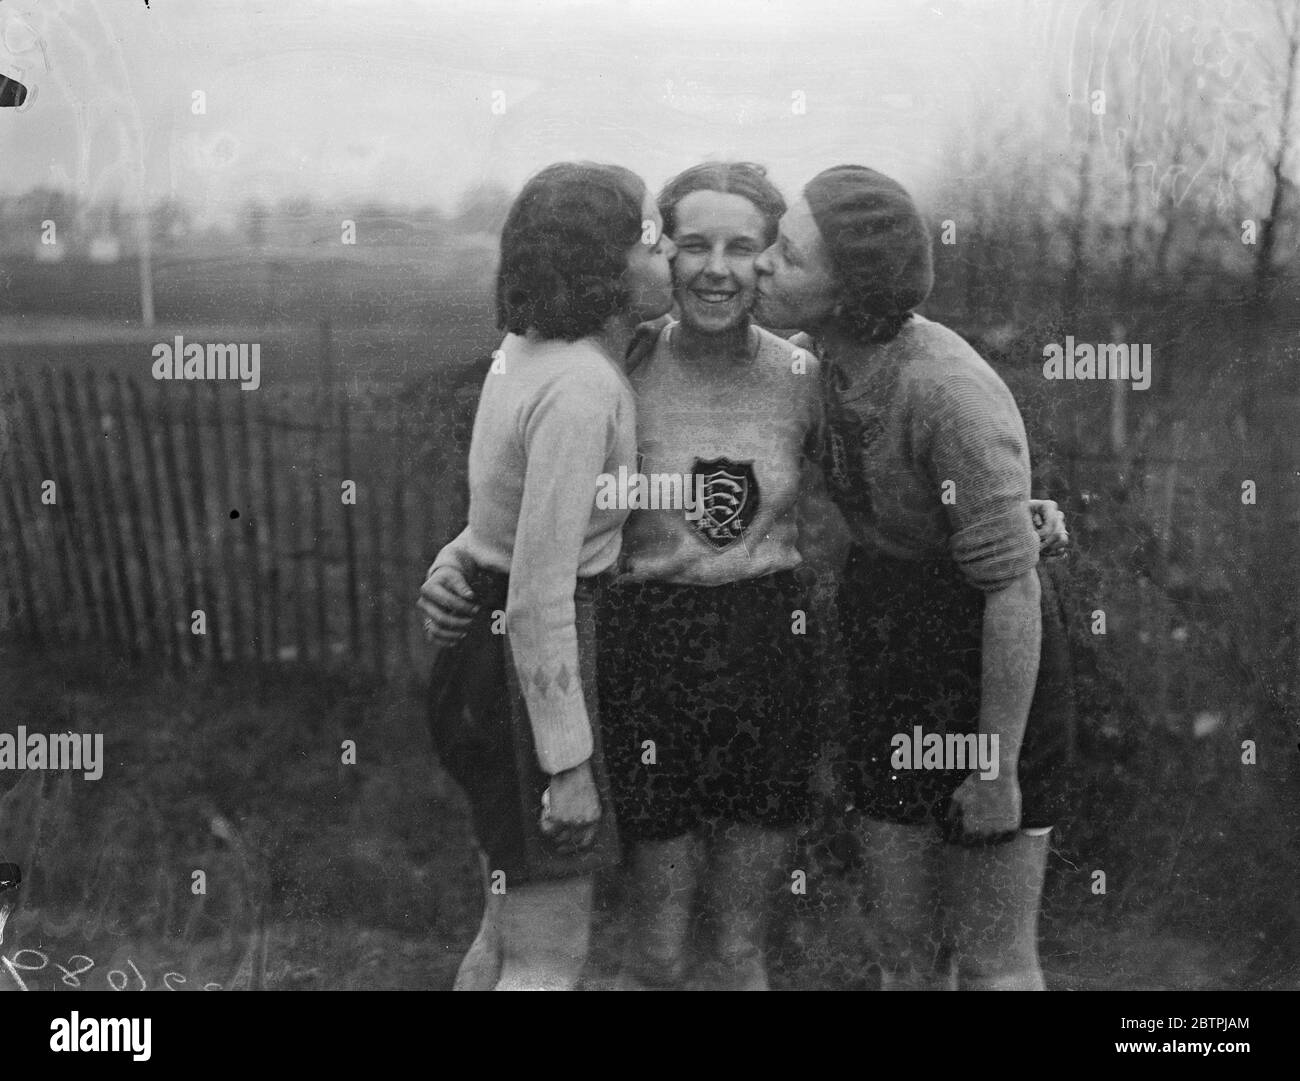 Herzlichen Glückwunsch zum Gewinner. Doris Butterfield, die Gewinnerin, wird von den Läufern geküsst - nach dem Middlesex Ladies Cross Country Run bei Pinner. 13. Januar 1934 30er, 30er, 30er, 30er, 30er, 30er Jahre Stockfoto